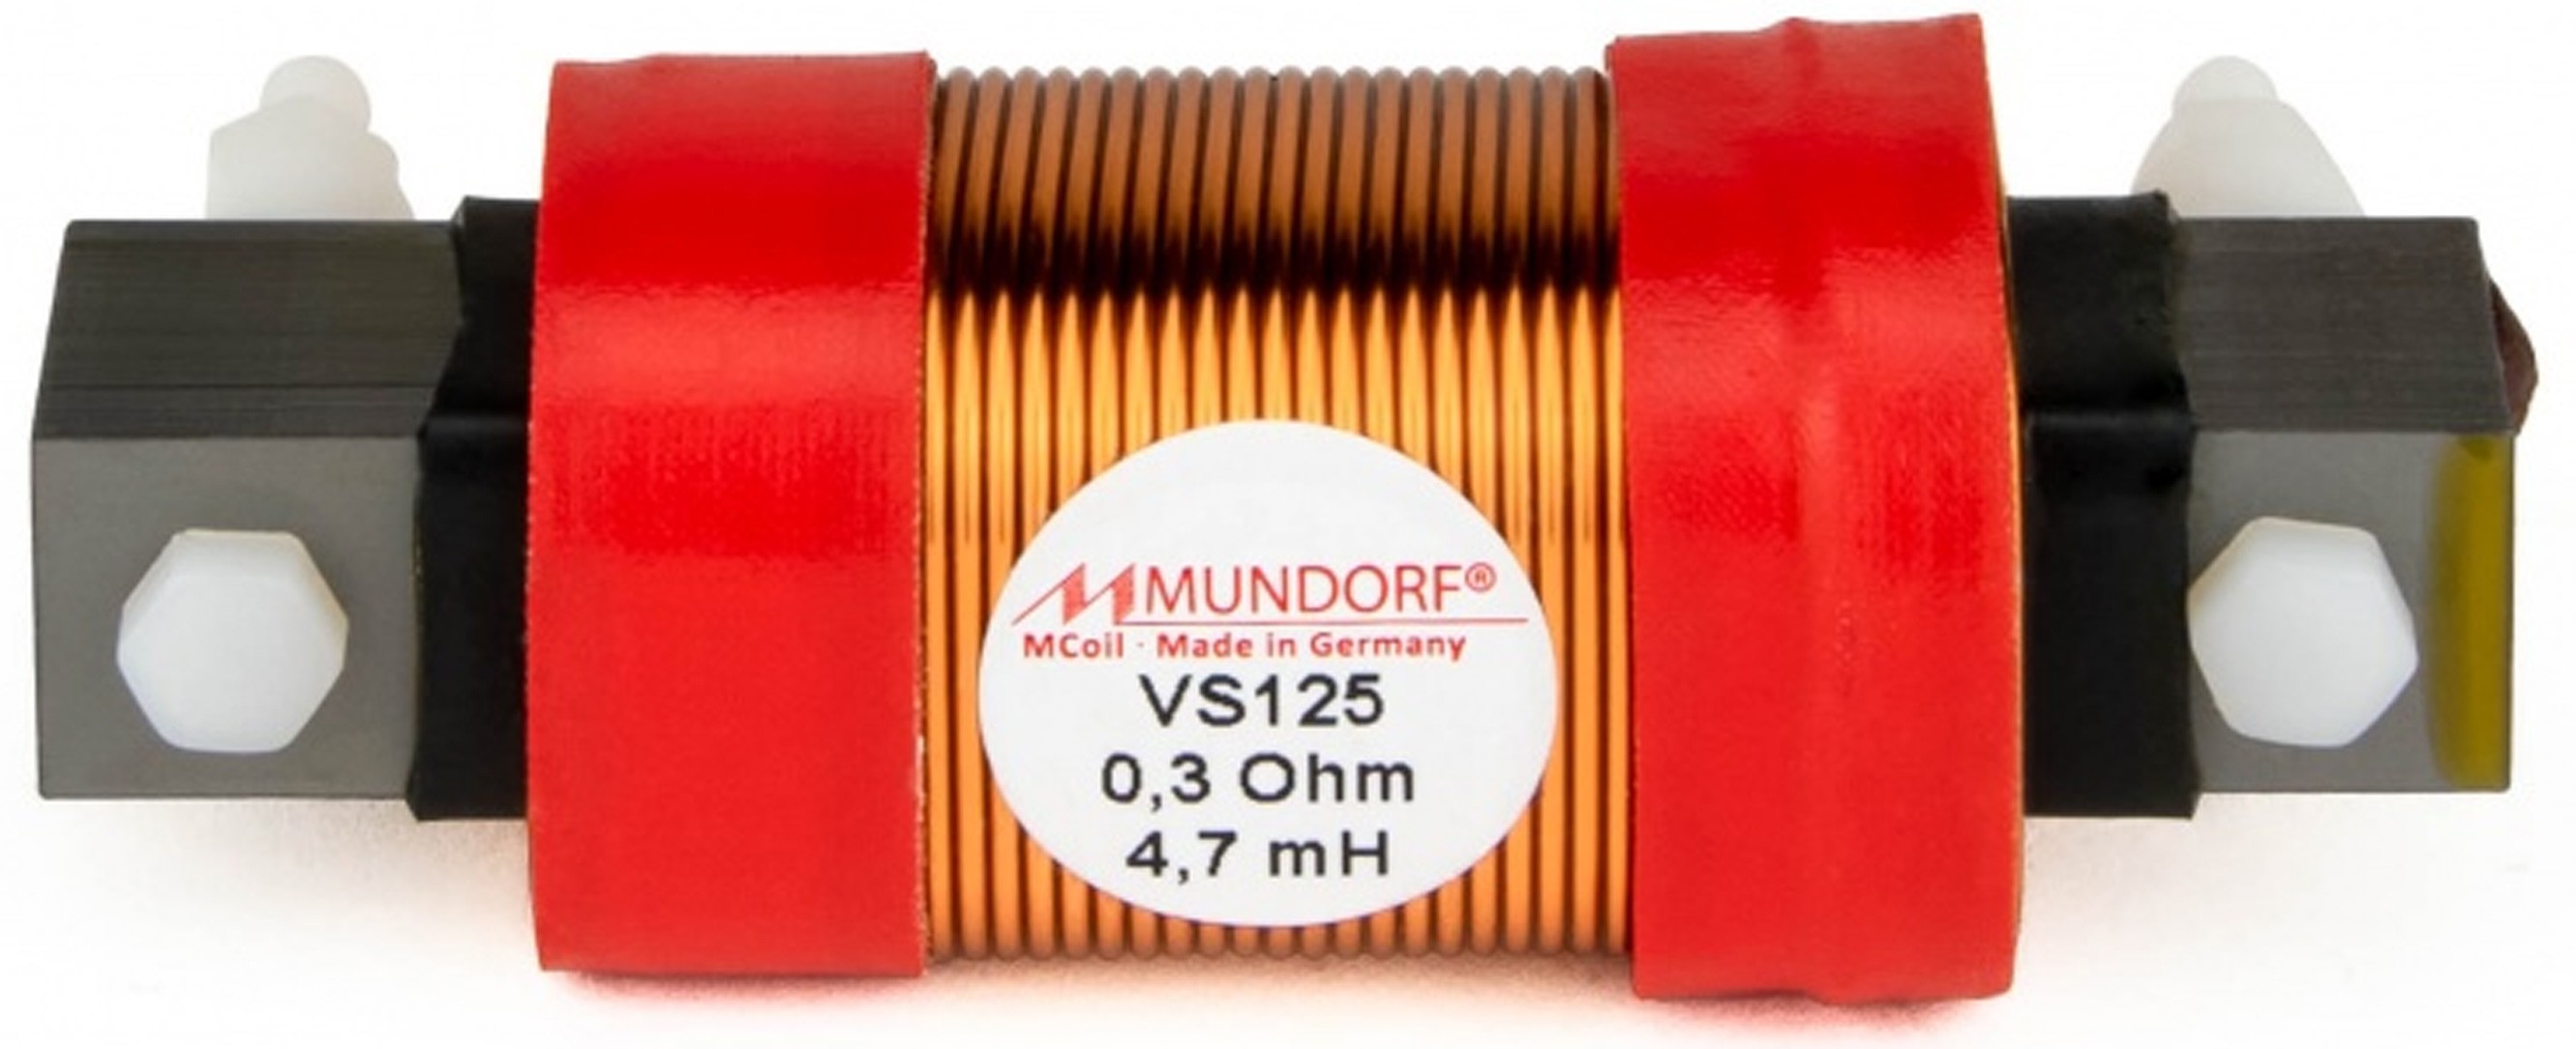 MUNDORF VS125-22 MCOIL ICORE Copper Coil Feron Core 22mH